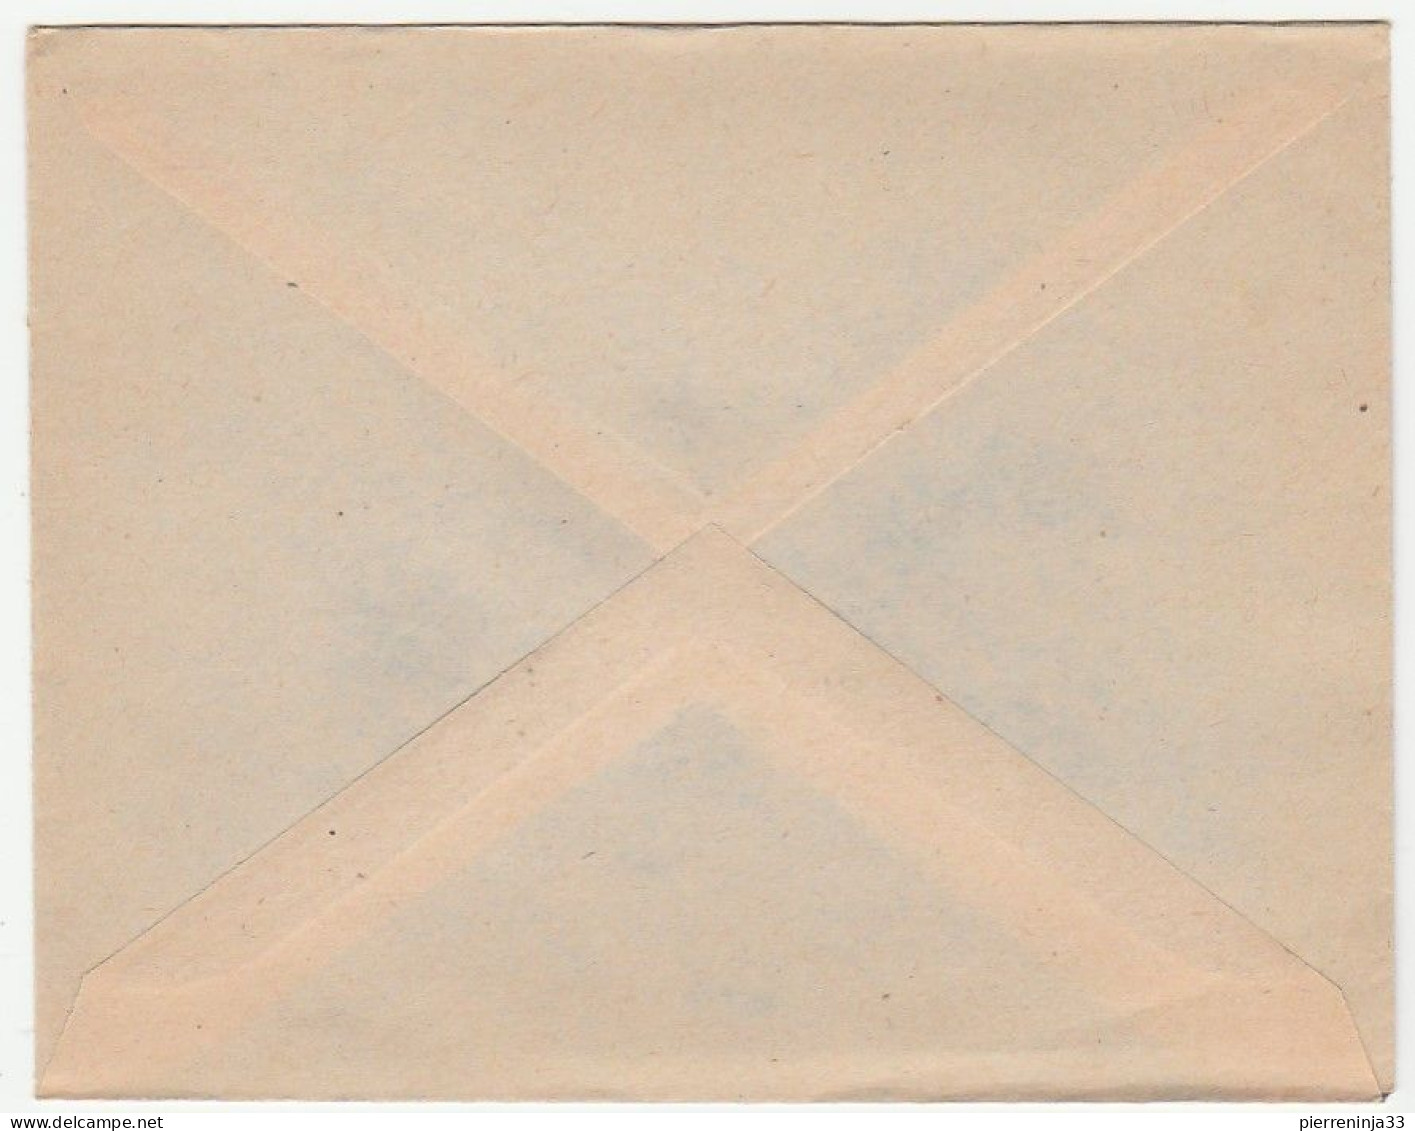 Lettre Thiés, Sénégal / Journée Du Timbre, 1949 - Lettres & Documents